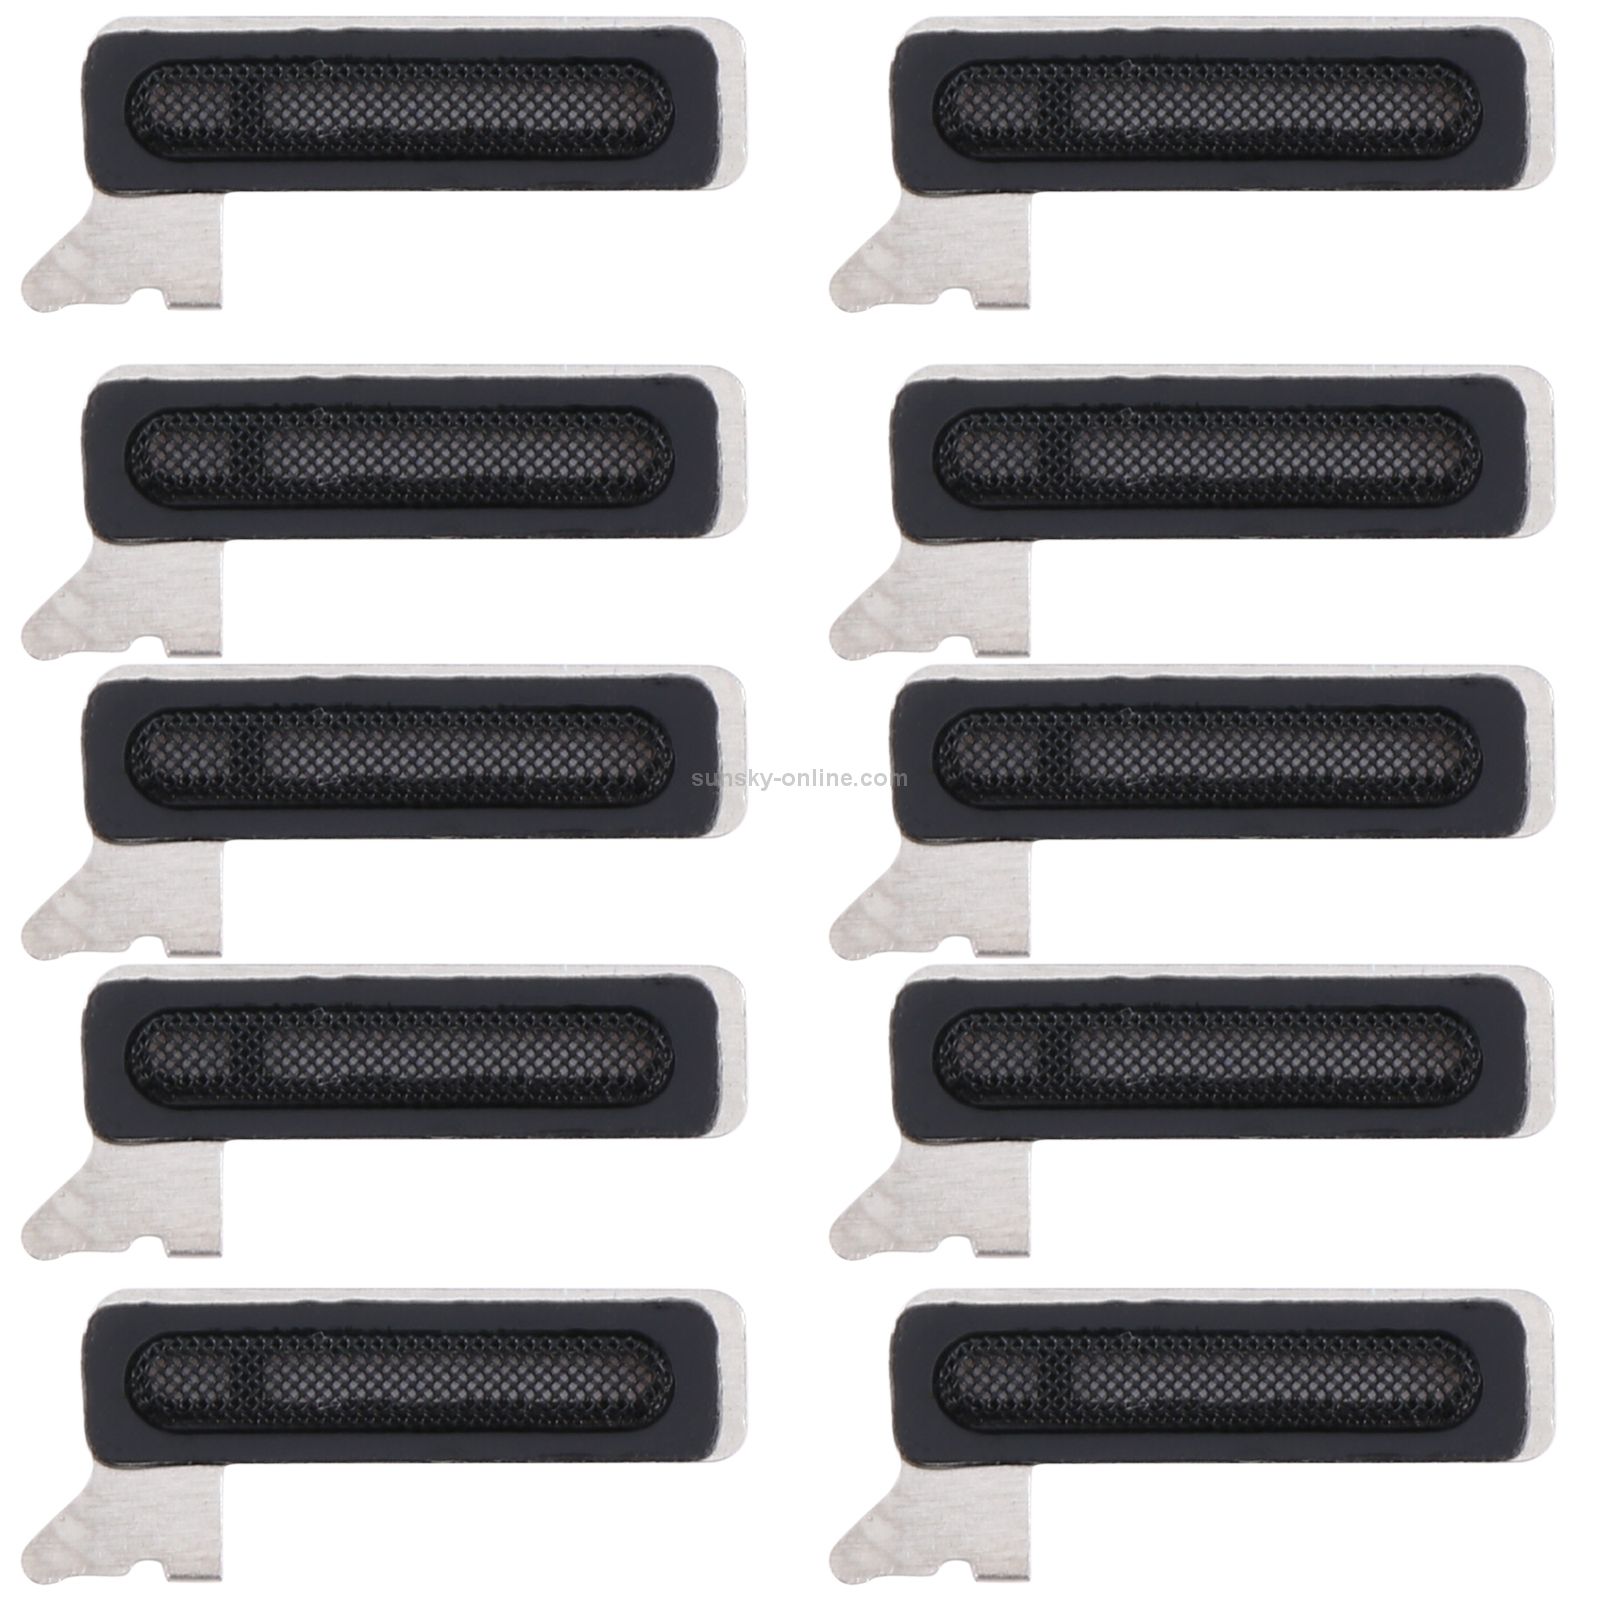  10 chiếc Loa tai nghe Lưới chống bụi cho iPhone 12 Pro / 12 Pro Max 